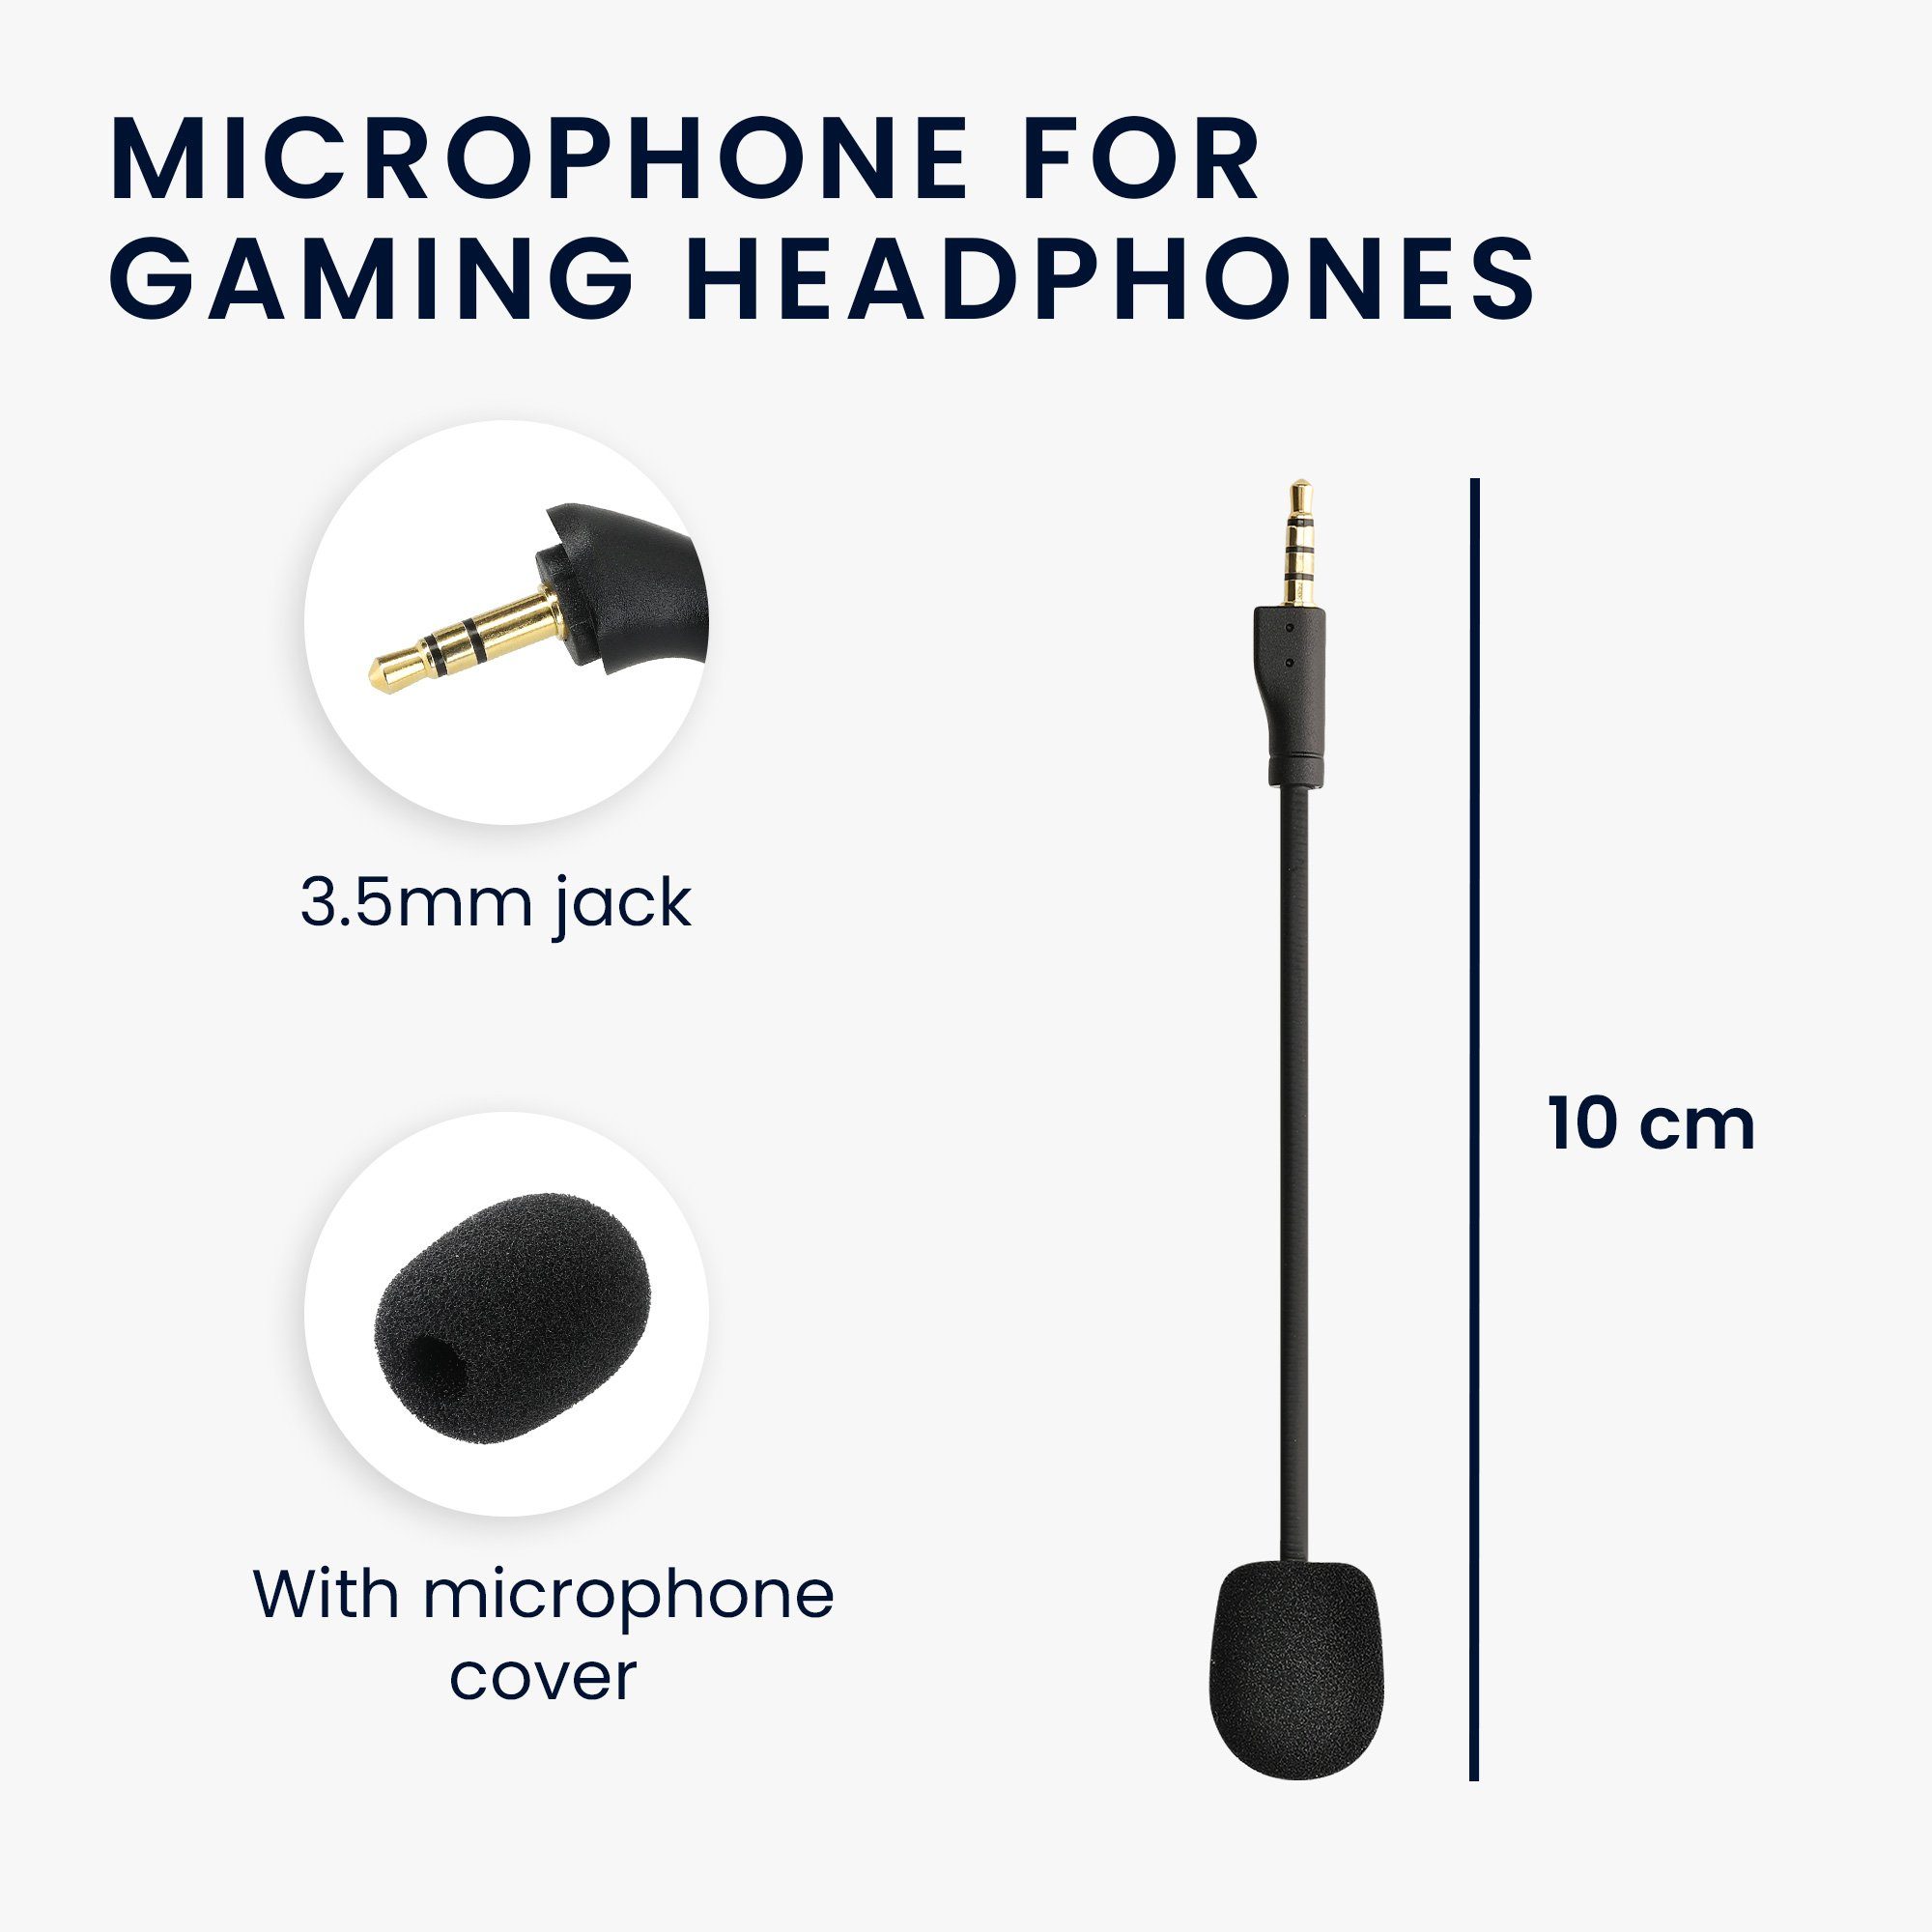 Zubehör Arctis 1 Gaming-Headset kwmobile Ersatz Kopfhörer für Mikrofon (Headset Microphone) Steelseries